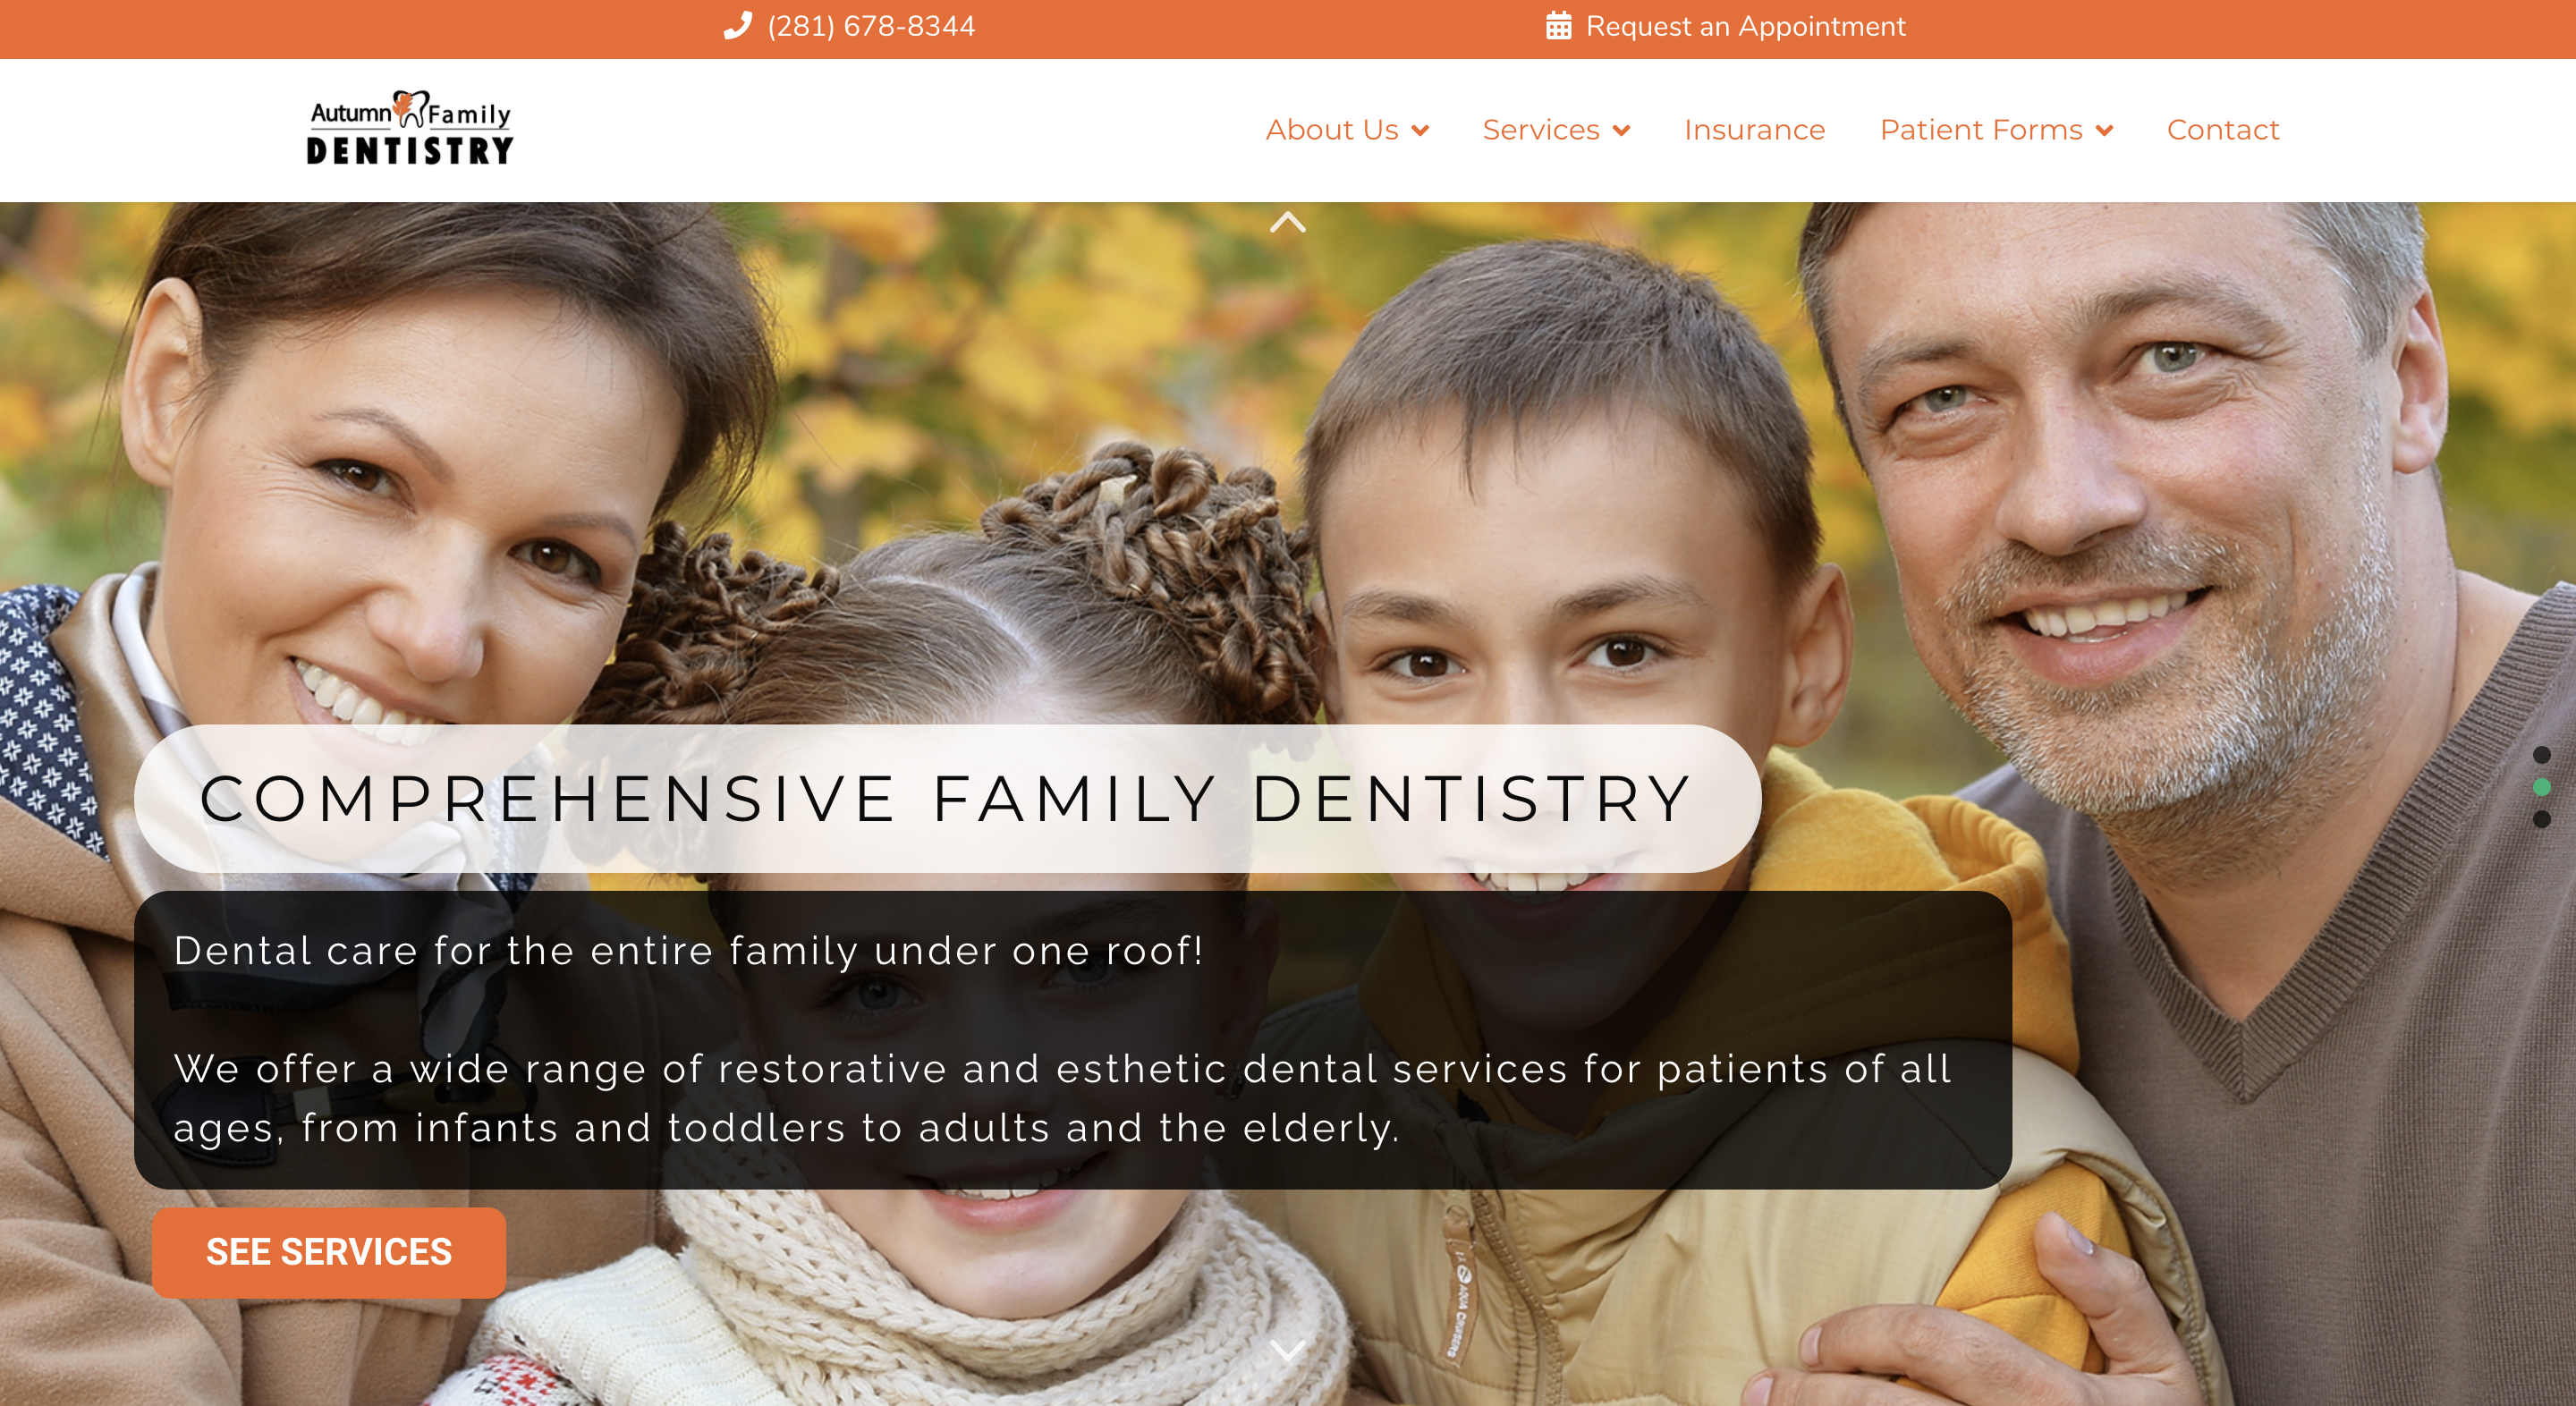 autumn family dentist homepage slide 2